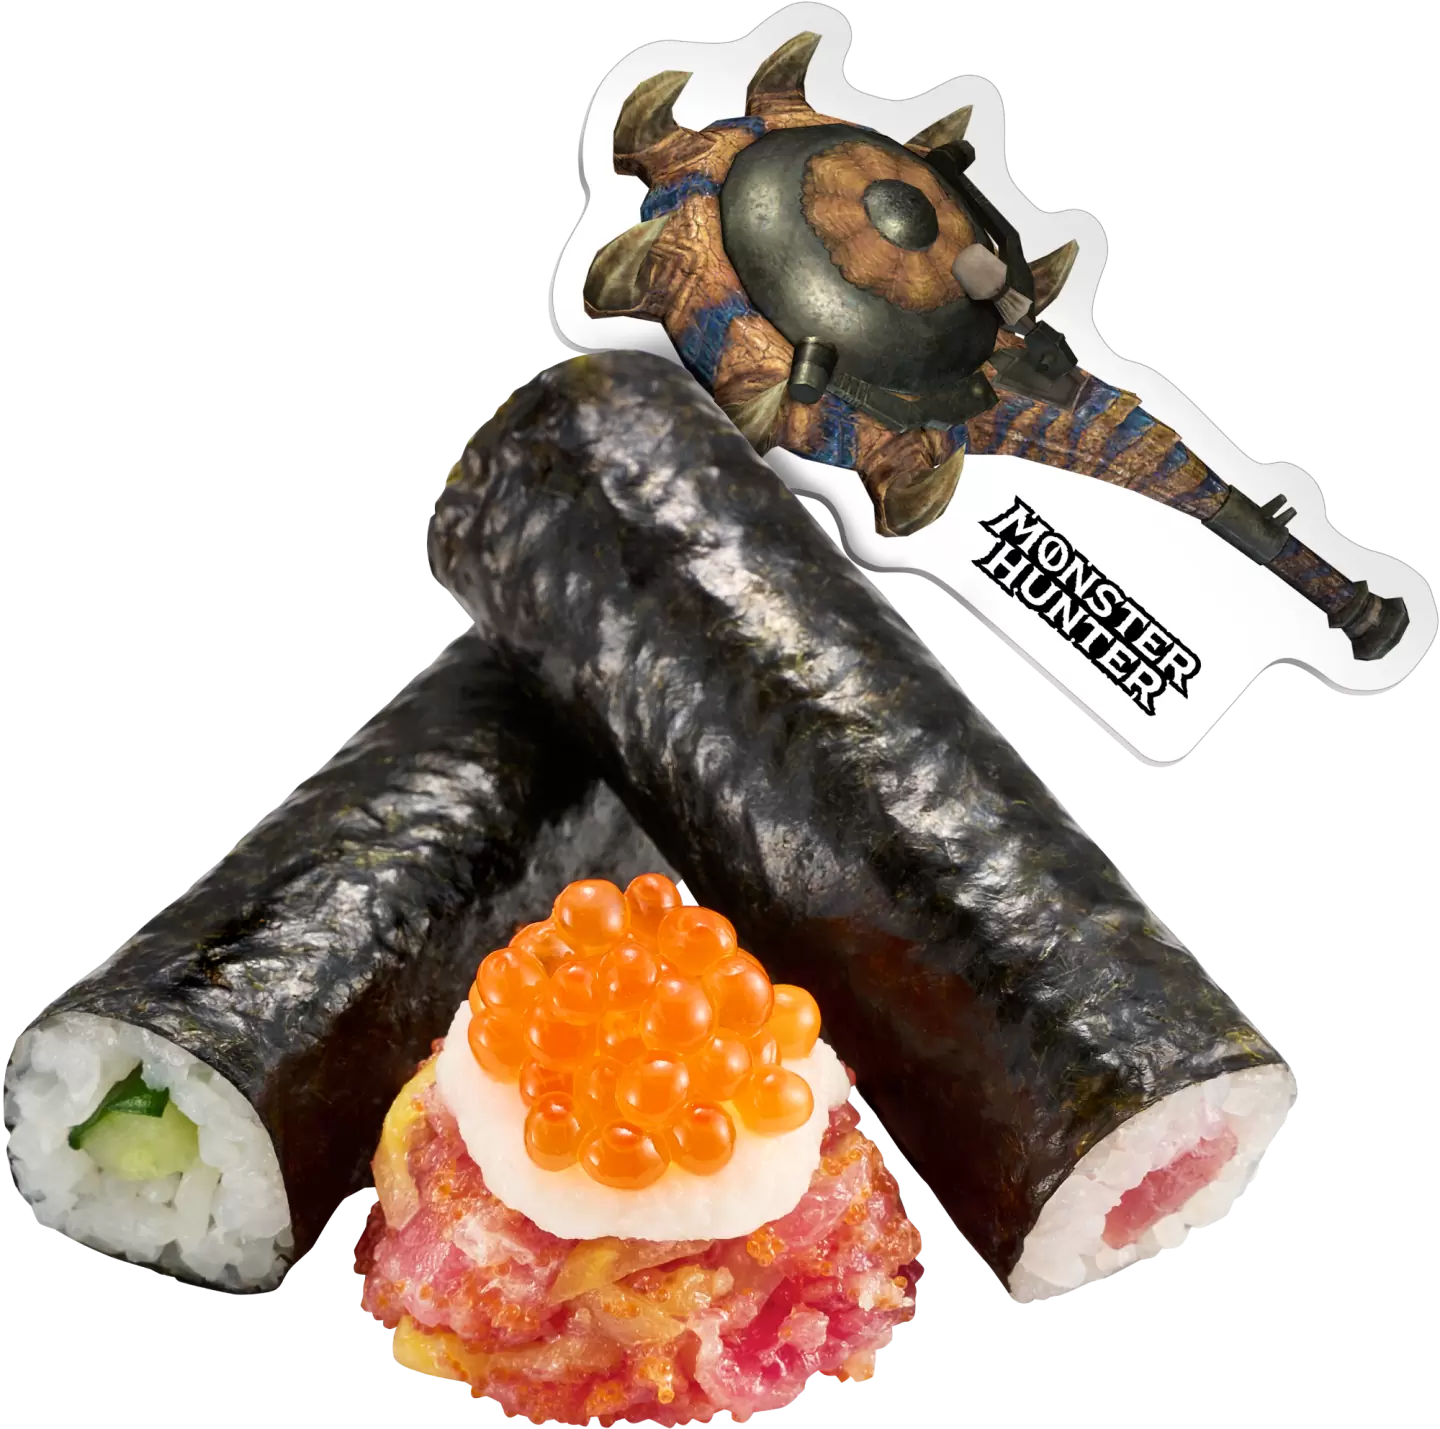 《怪物猎人》x 日本寿司郎合作活动 3/27 开跑，吃美味限定菜单抽冷冻鲔鱼大剑背包！